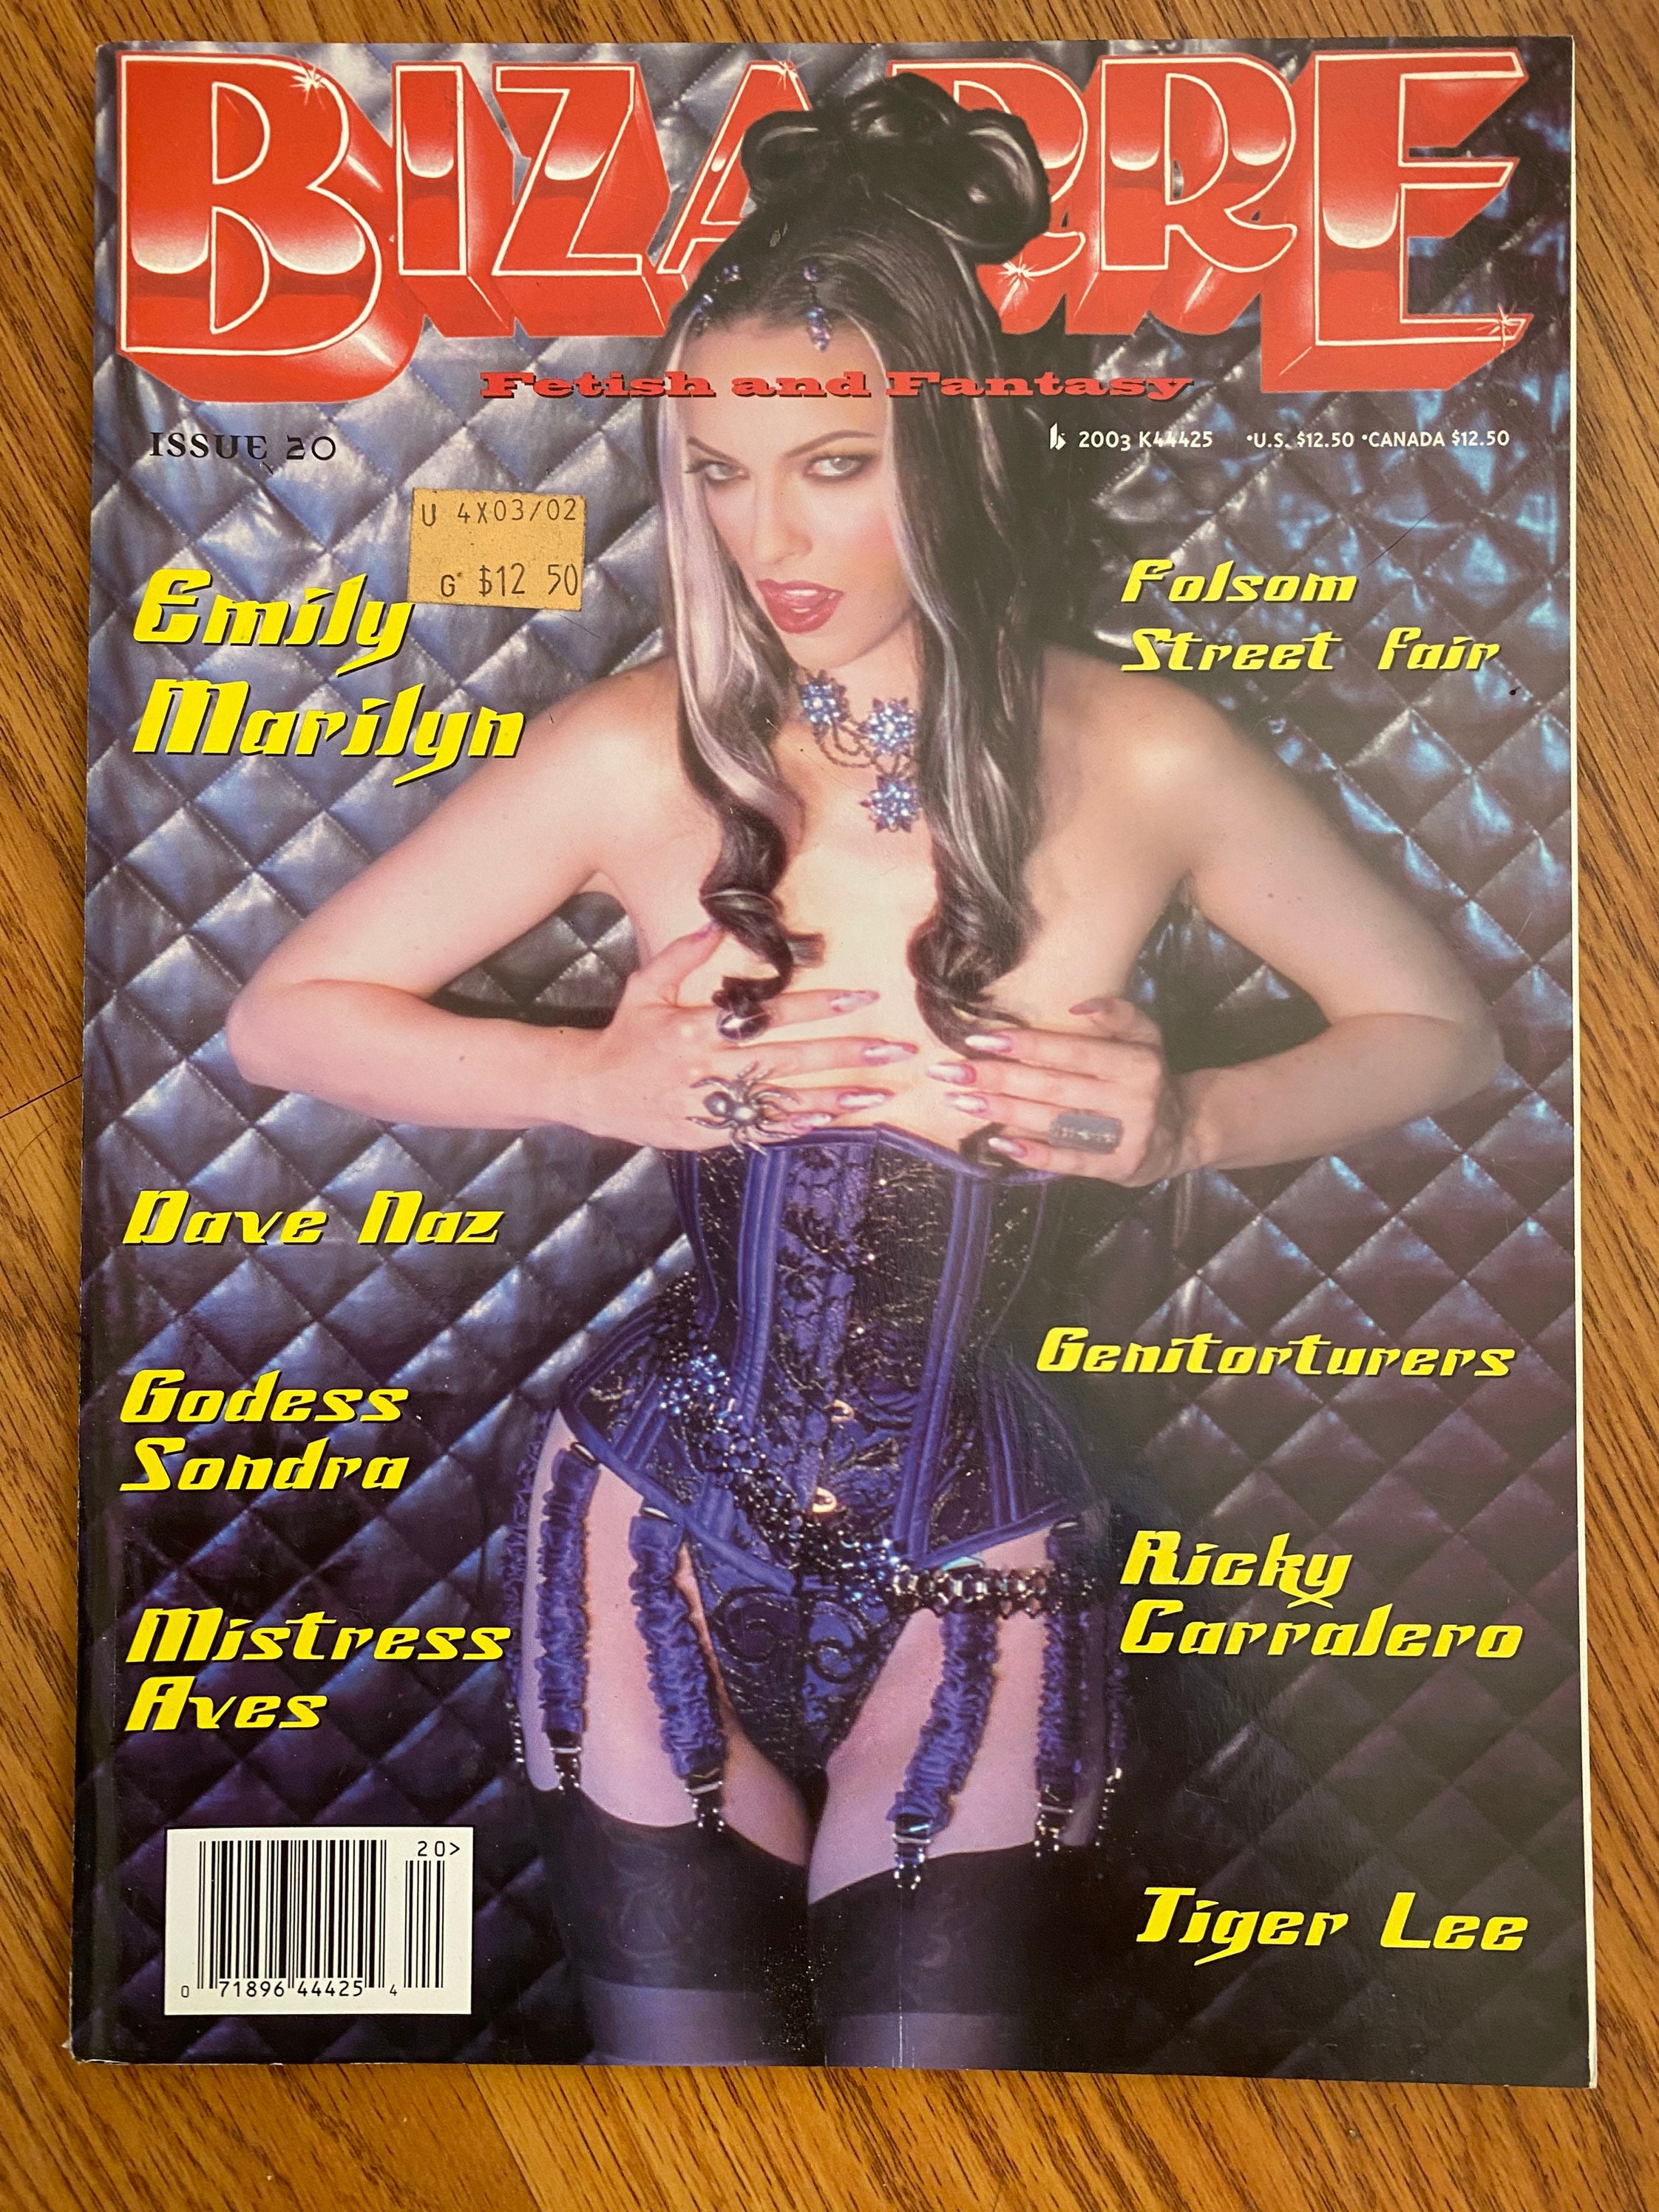 BIZARRE Magazine Issue 20 2003 Extreme Fetish Adult - Etsy Australia